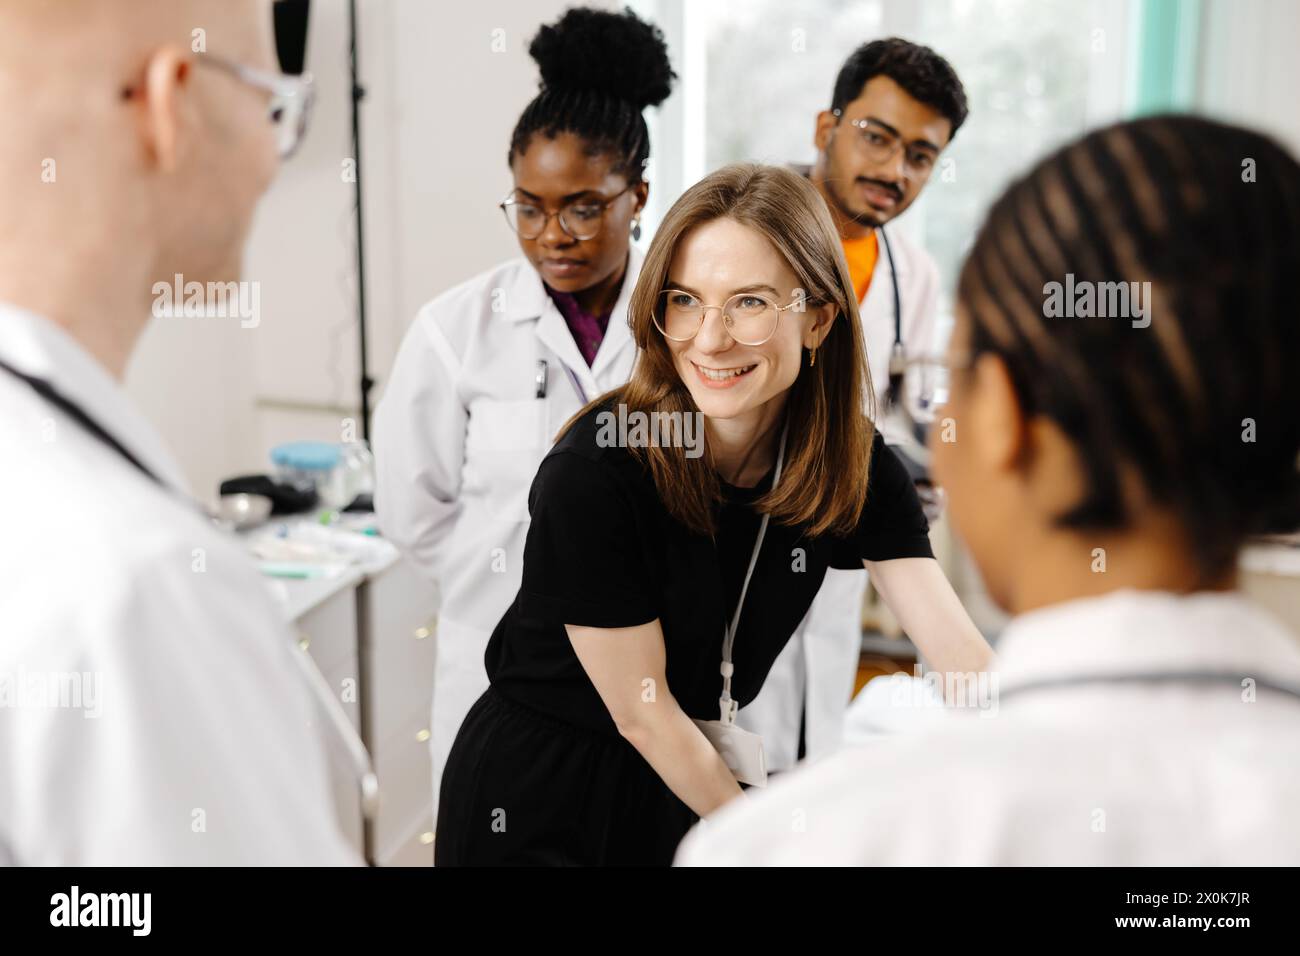 Une femme vêtue d'une robe noire est soignée par un groupe de médecins, qui se tiennent autour d'elle de manière sérieuse, discutant peut-être de son état médical Banque D'Images